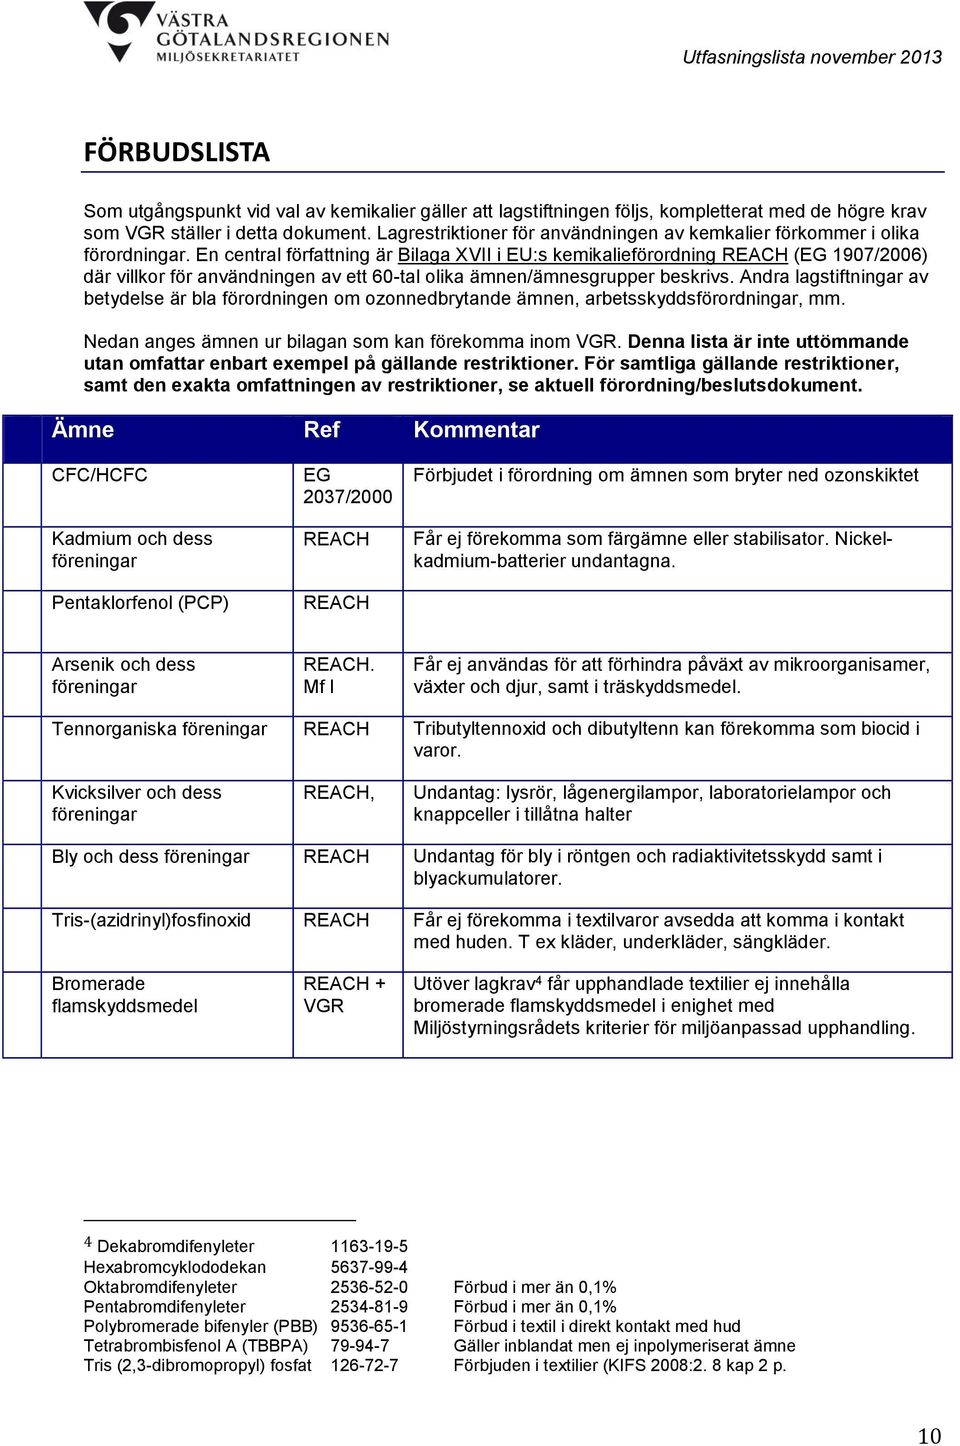 En central författning är Bilaga XVII i EU:s kemikalieförordning REACH (EG 1907/2006) där villkor för användningen av ett 60-tal olika ämnen/ämnesgrupper beskrivs.